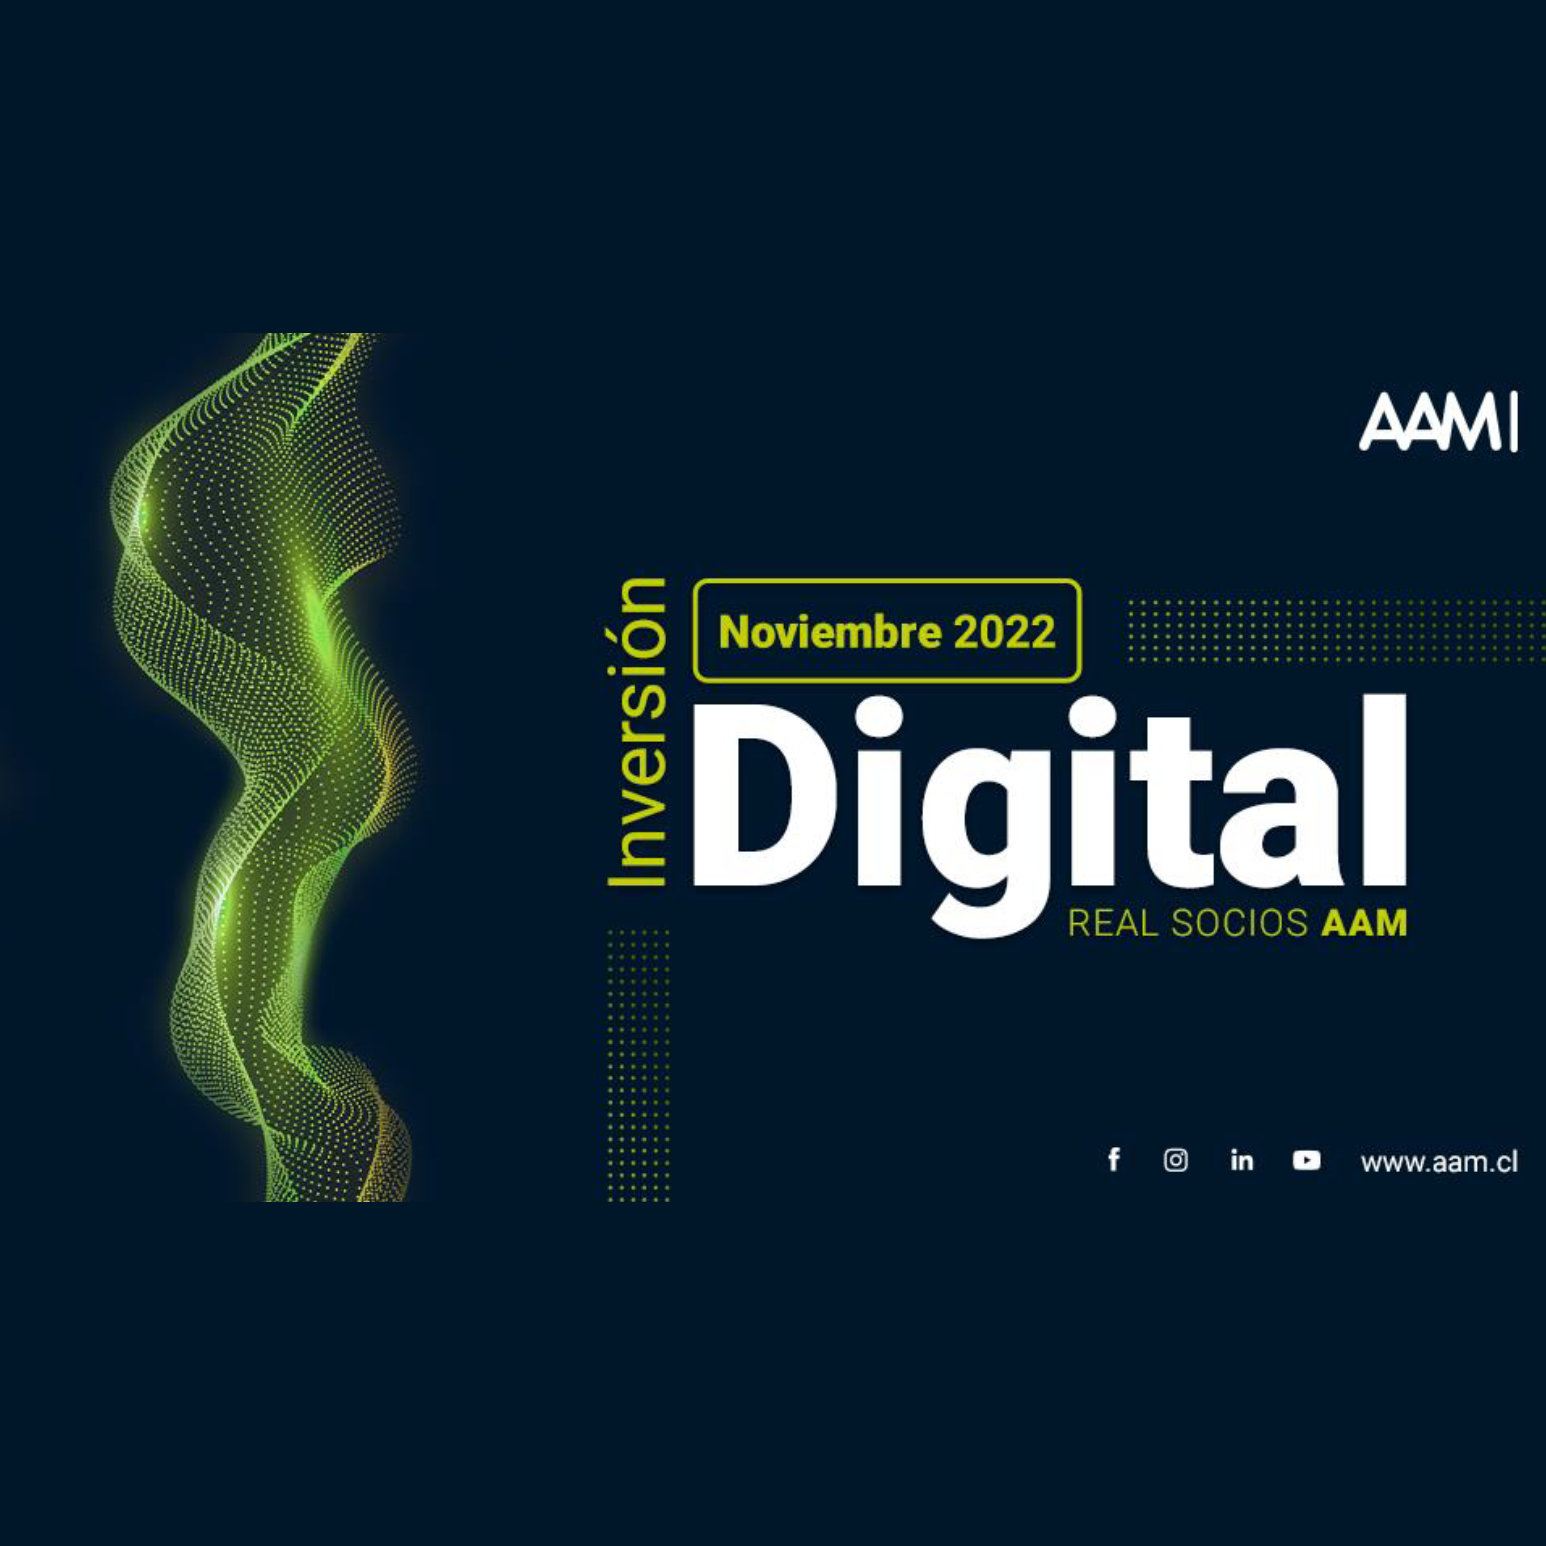 Inversión digital real socios AAM – noviembre 2022